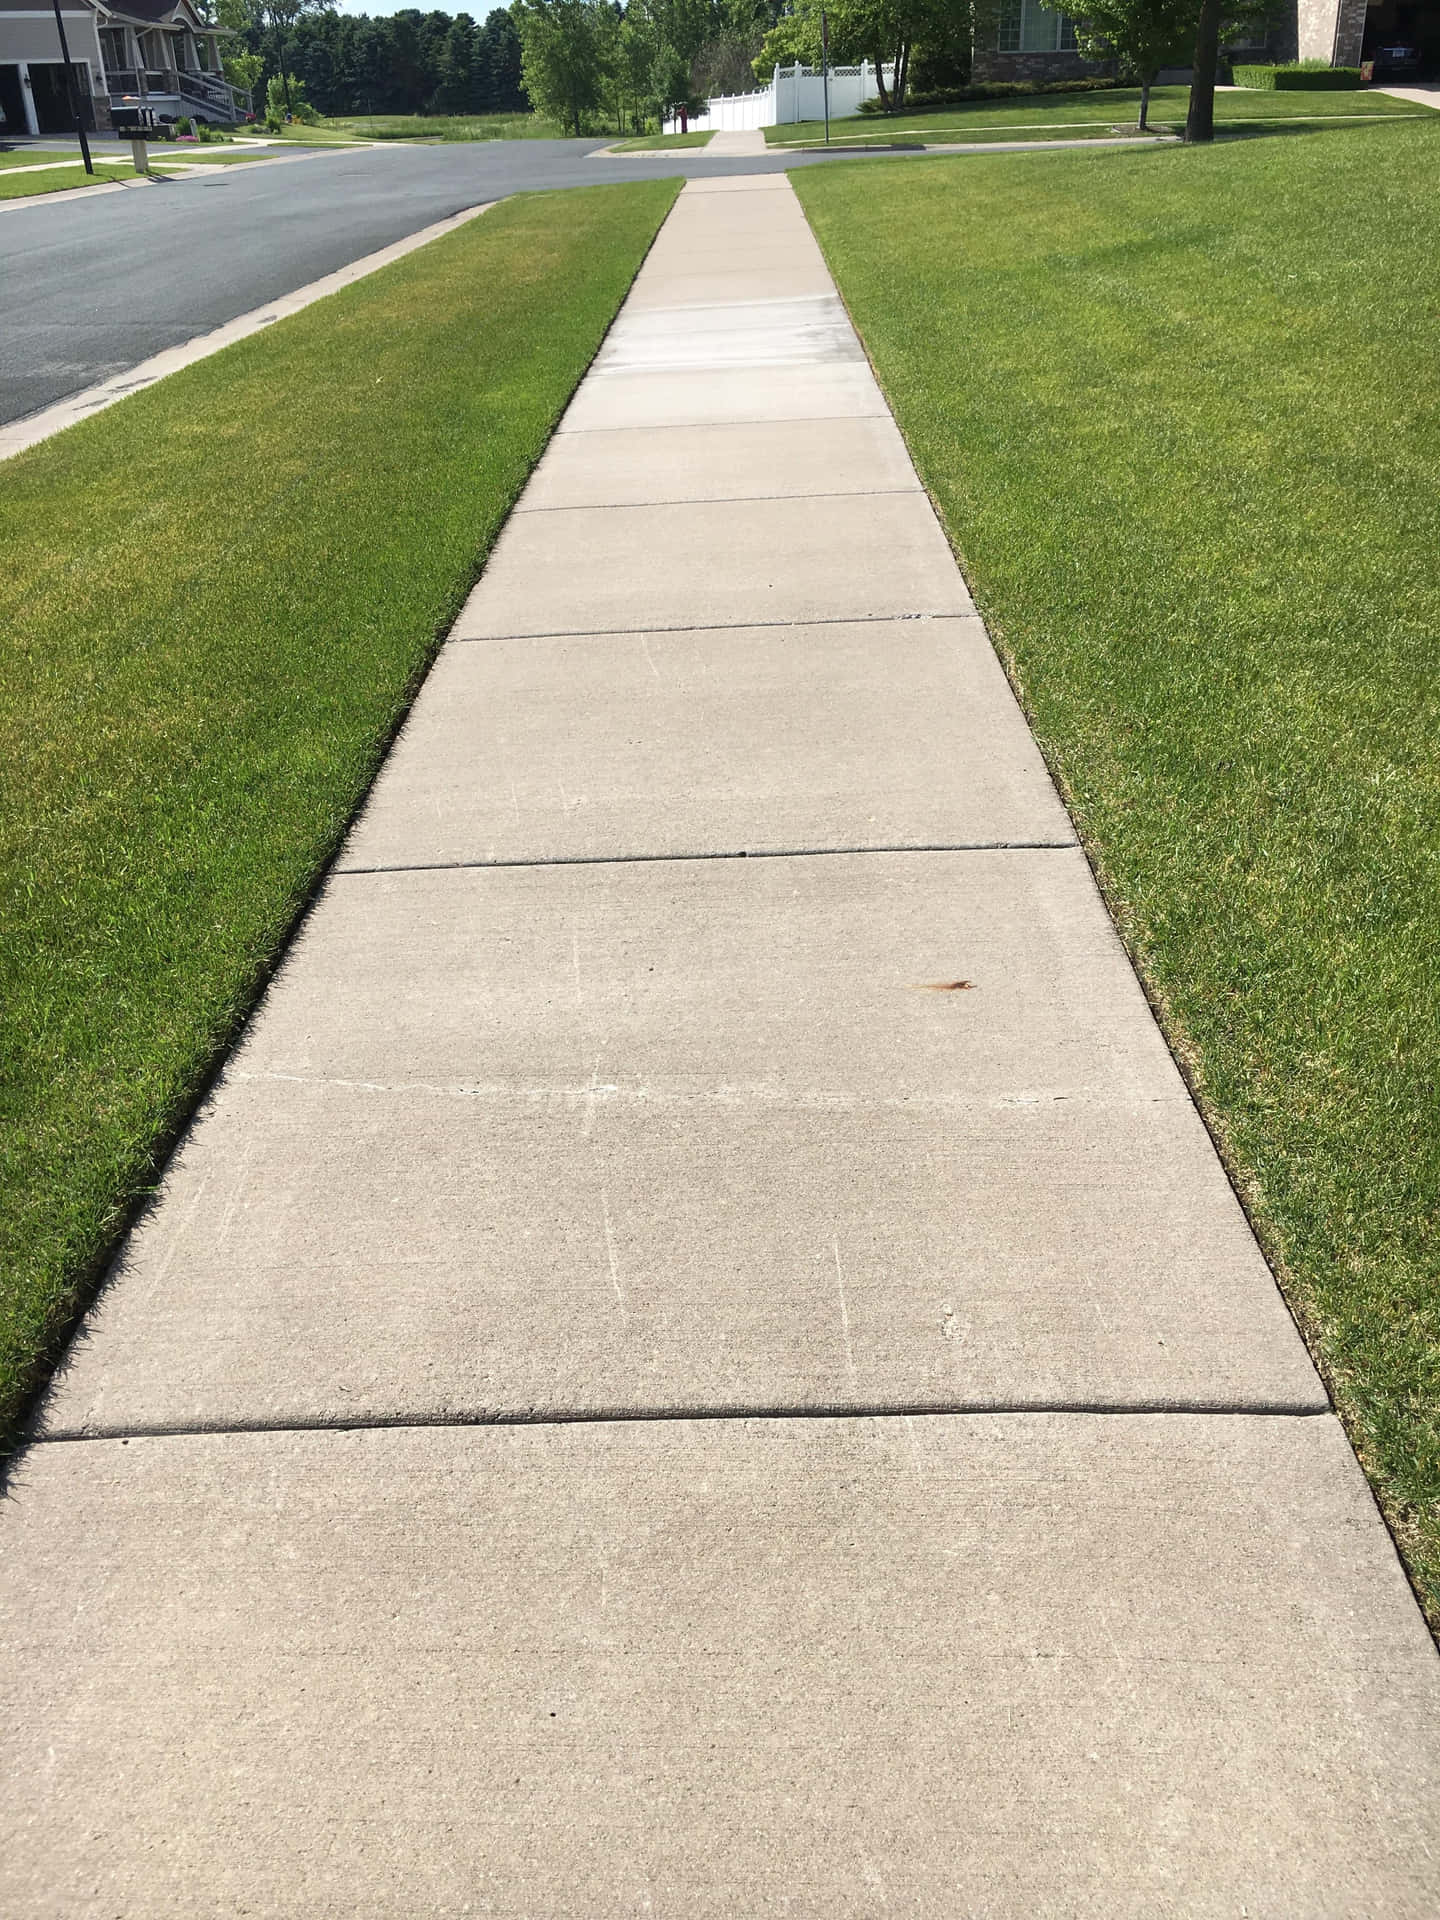 Taking a leisurely stroll on a sidewalk.